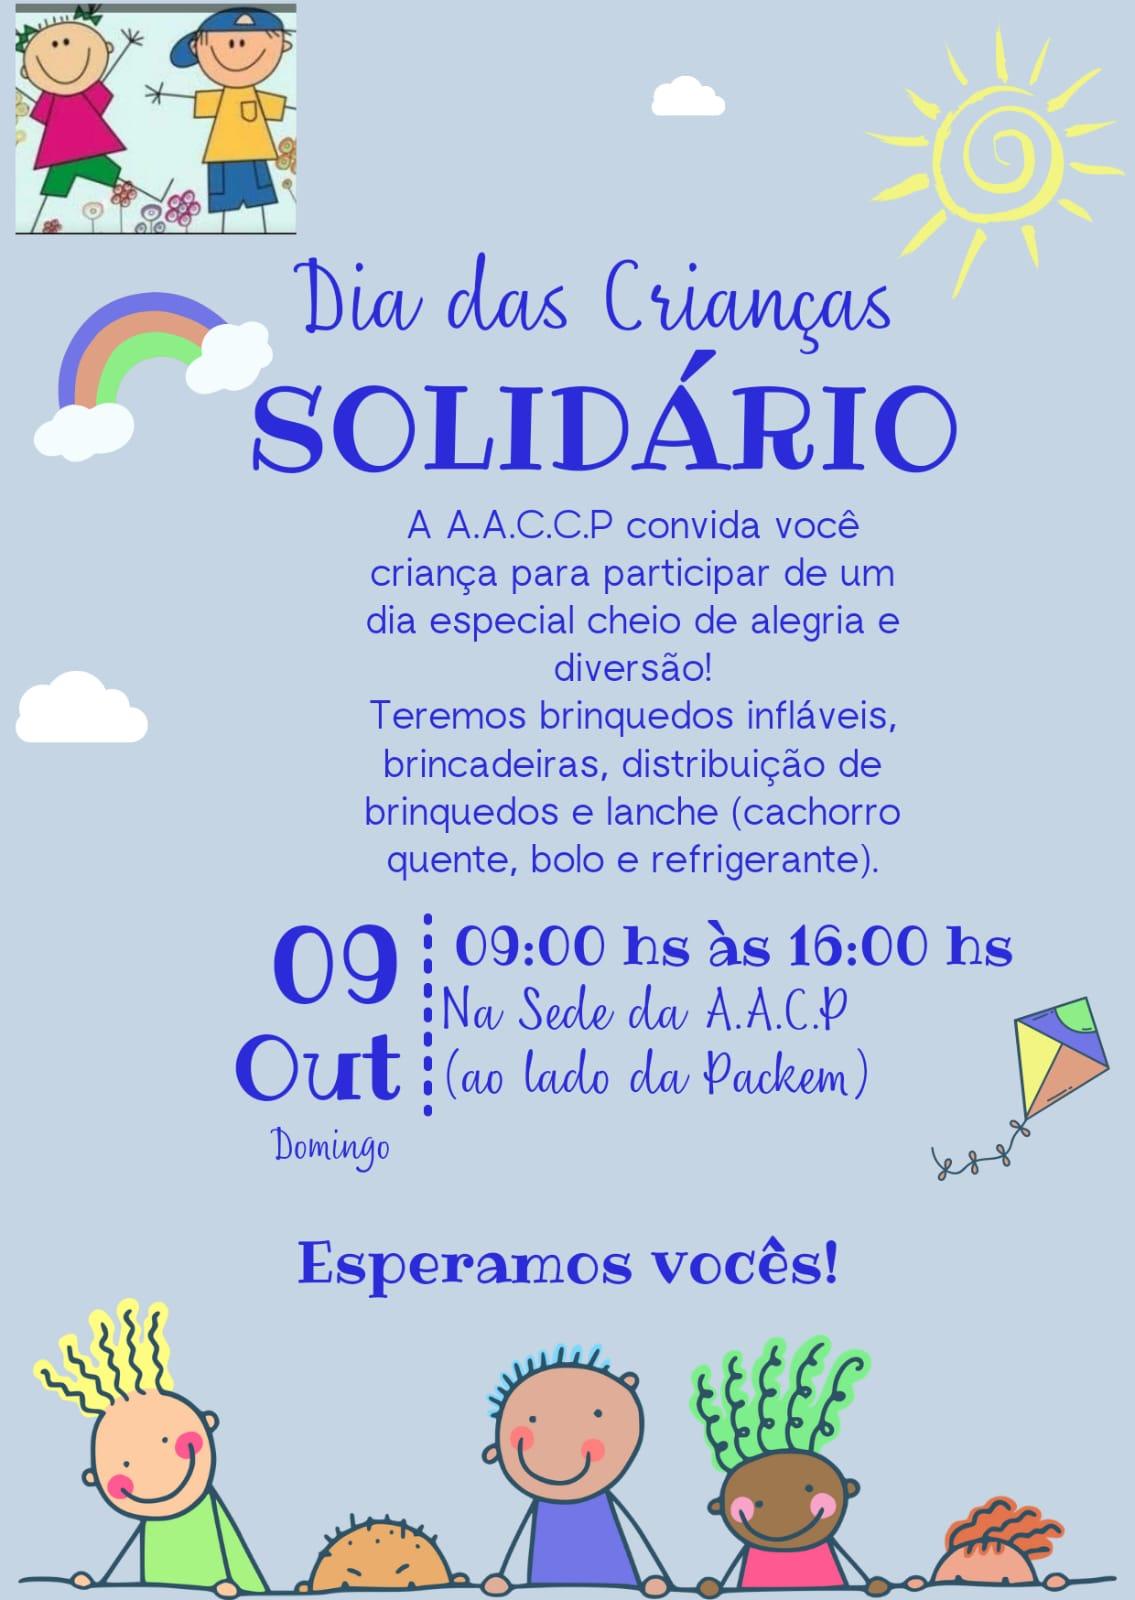 Associação de apoio às crianças carentes de Petrolândia promove domingo (9) o “Dia das Crianças Solidário”